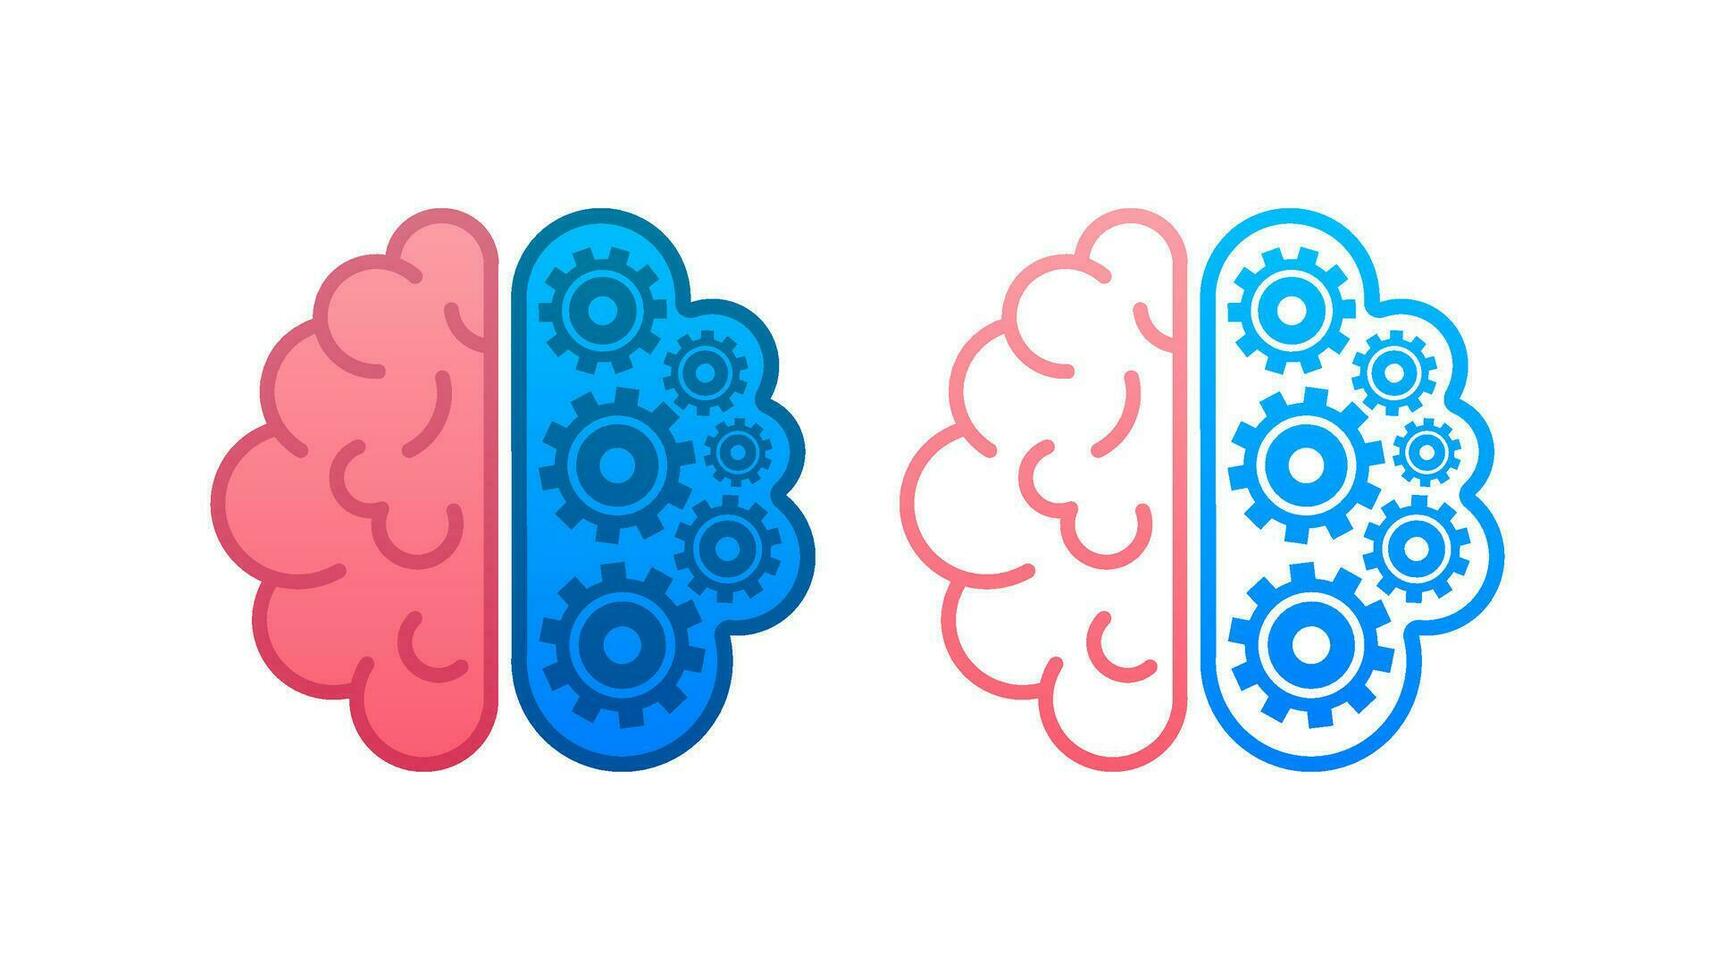 cerebro. digital cerebro en mano. neural red. iq pruebas. idea genial pensar idea. vector valores ilustración